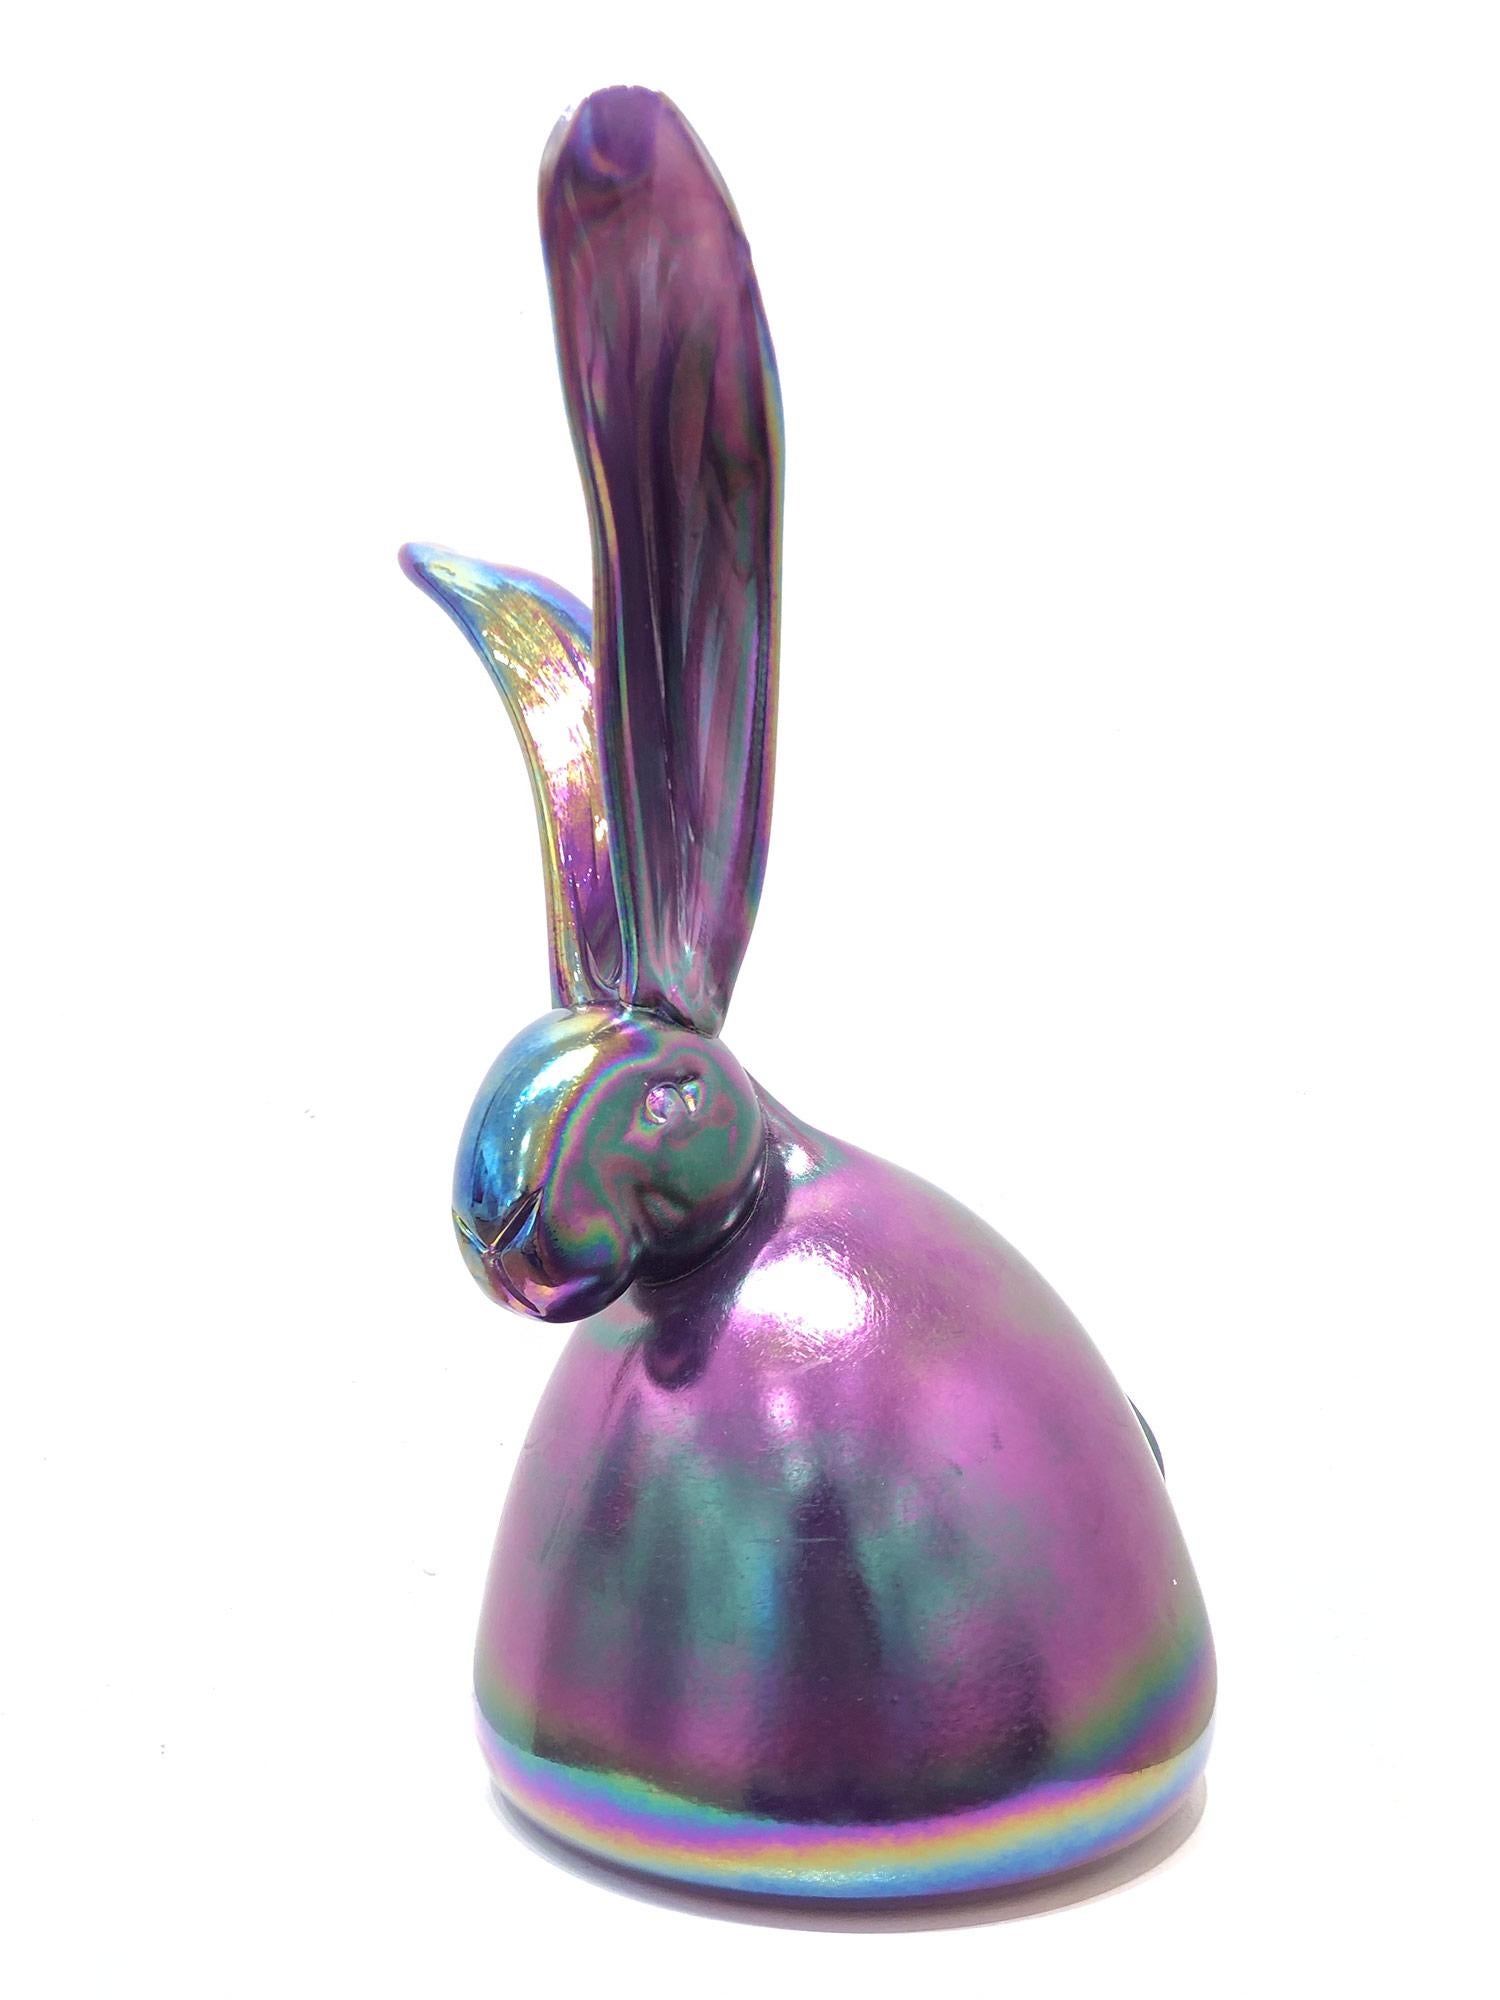 "Zofia" Unique Glass Blown Bunny Sculpture in an Iridescent Purple Color